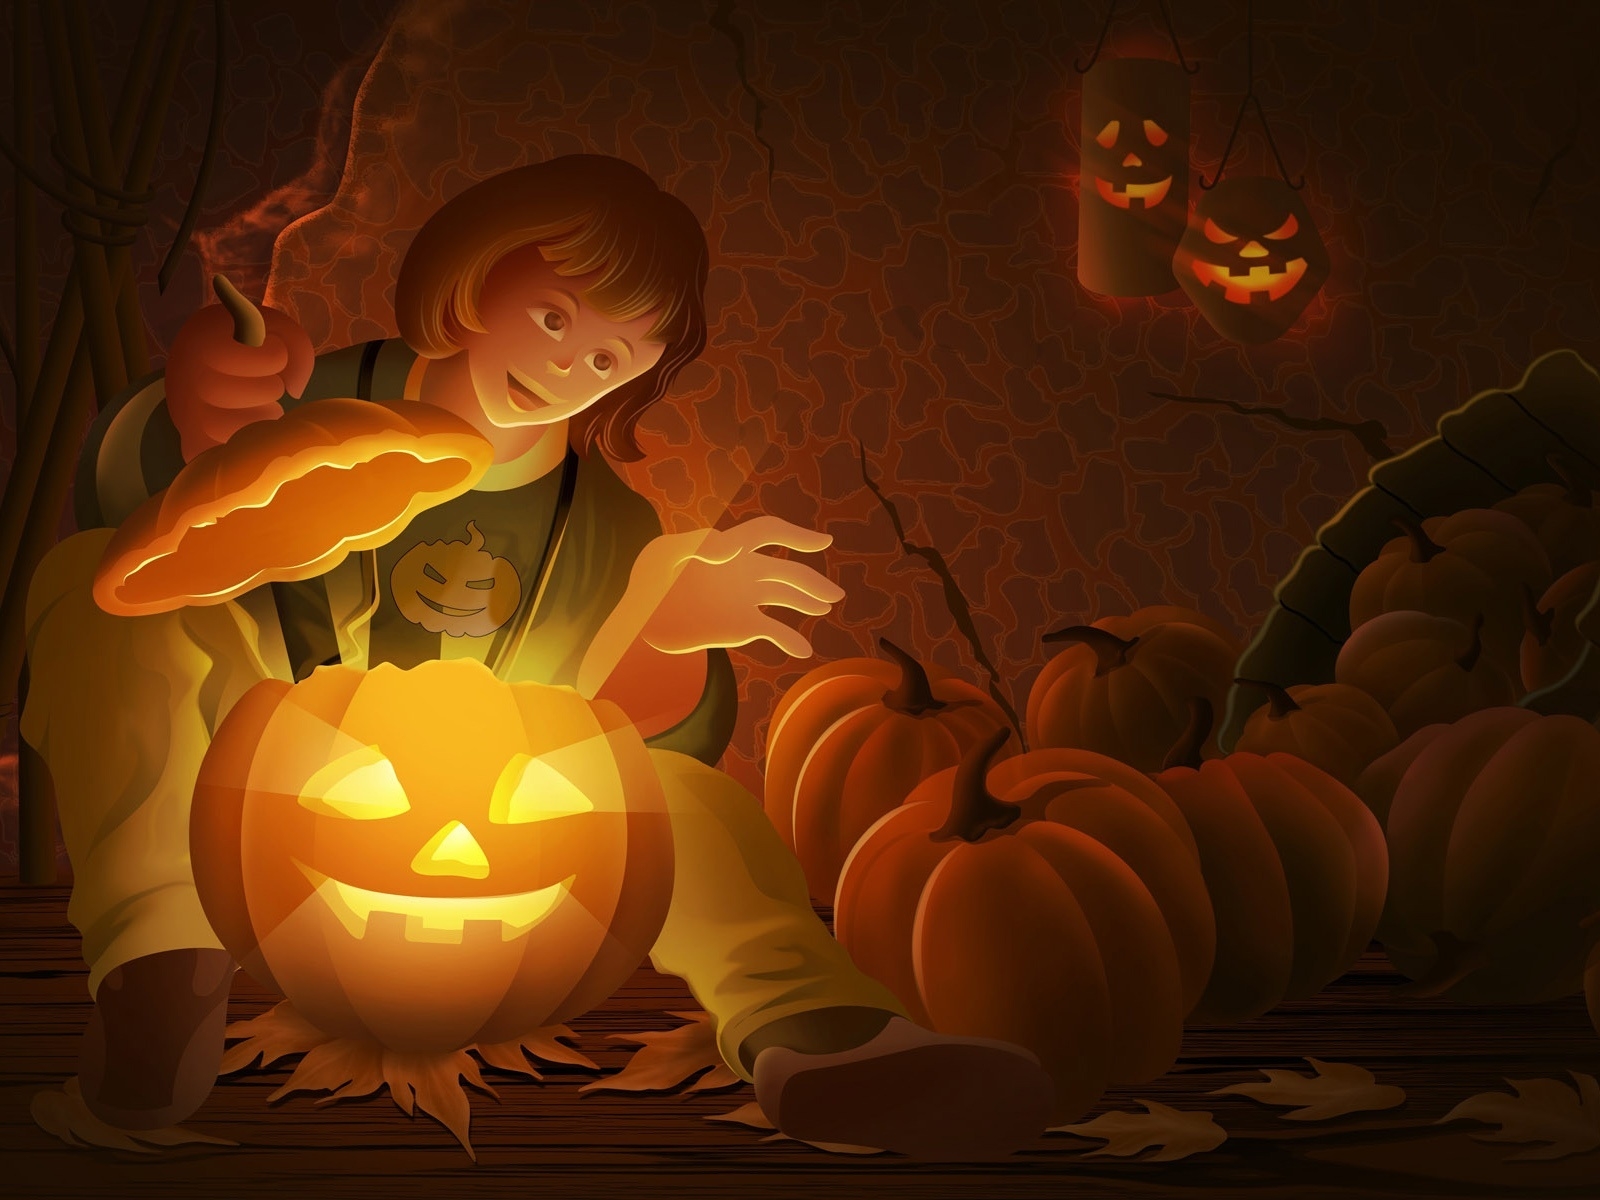 Cool Halloween Pumpkin for 1600 x 1200 resolution